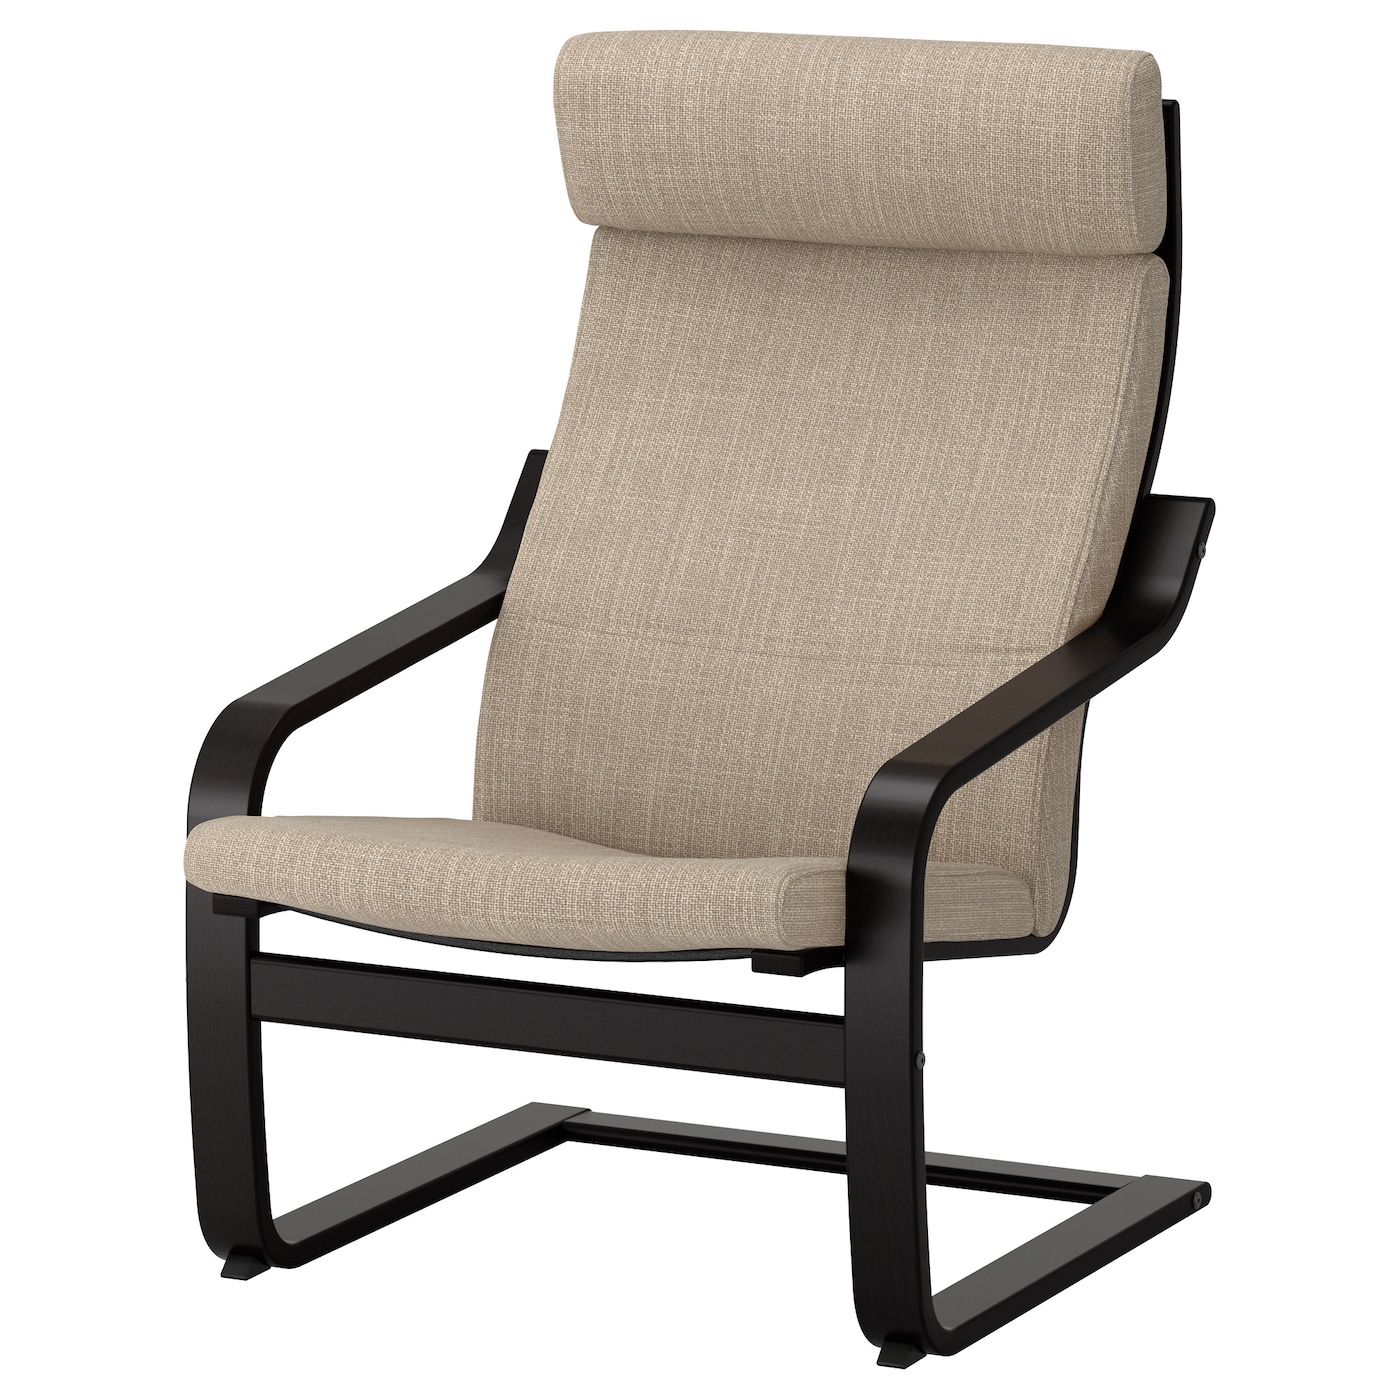 ПОЭНГ Кресло, черно-коричневый/Хилларед бежевый POÄNG IKEA кресло для геймеров drift dr550 коричневый